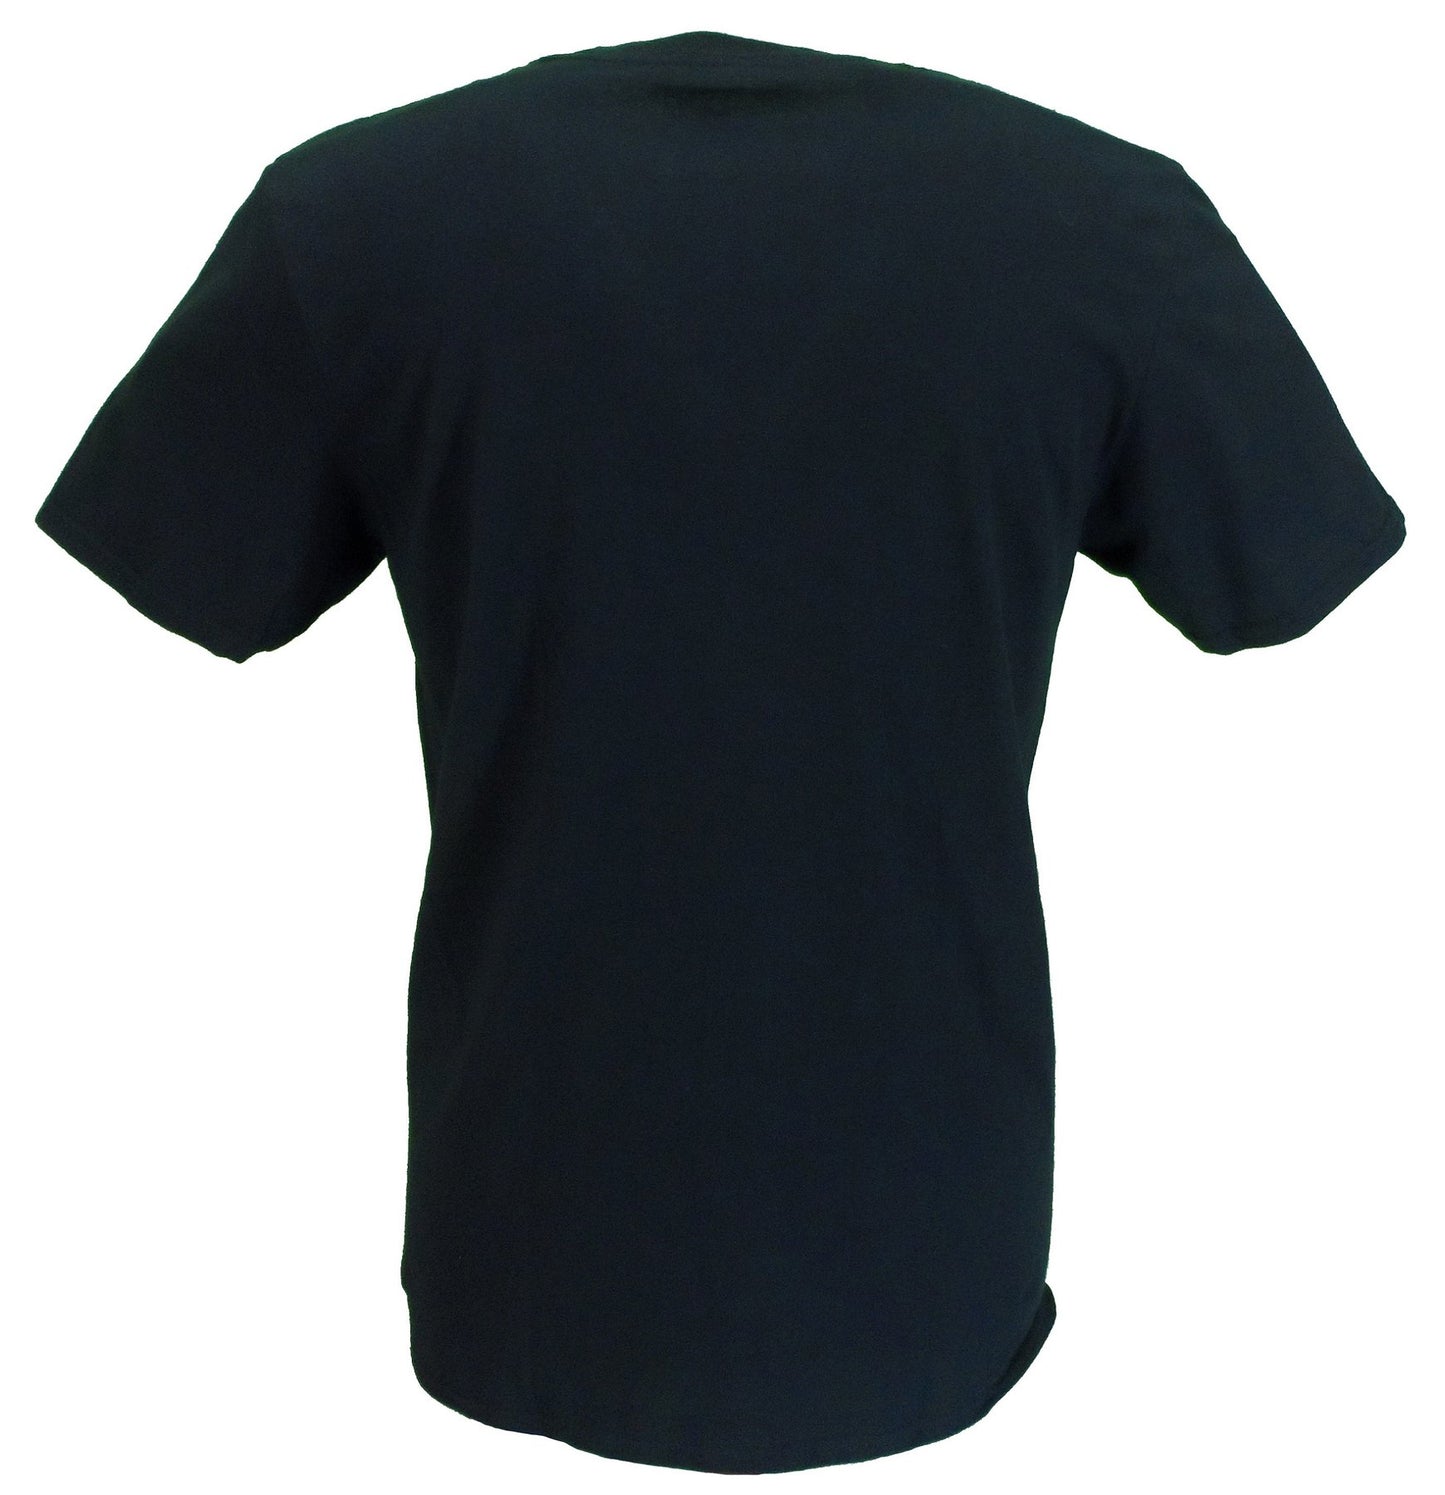 T-shirt noir avec logo en spray blanc officiel pour hommes